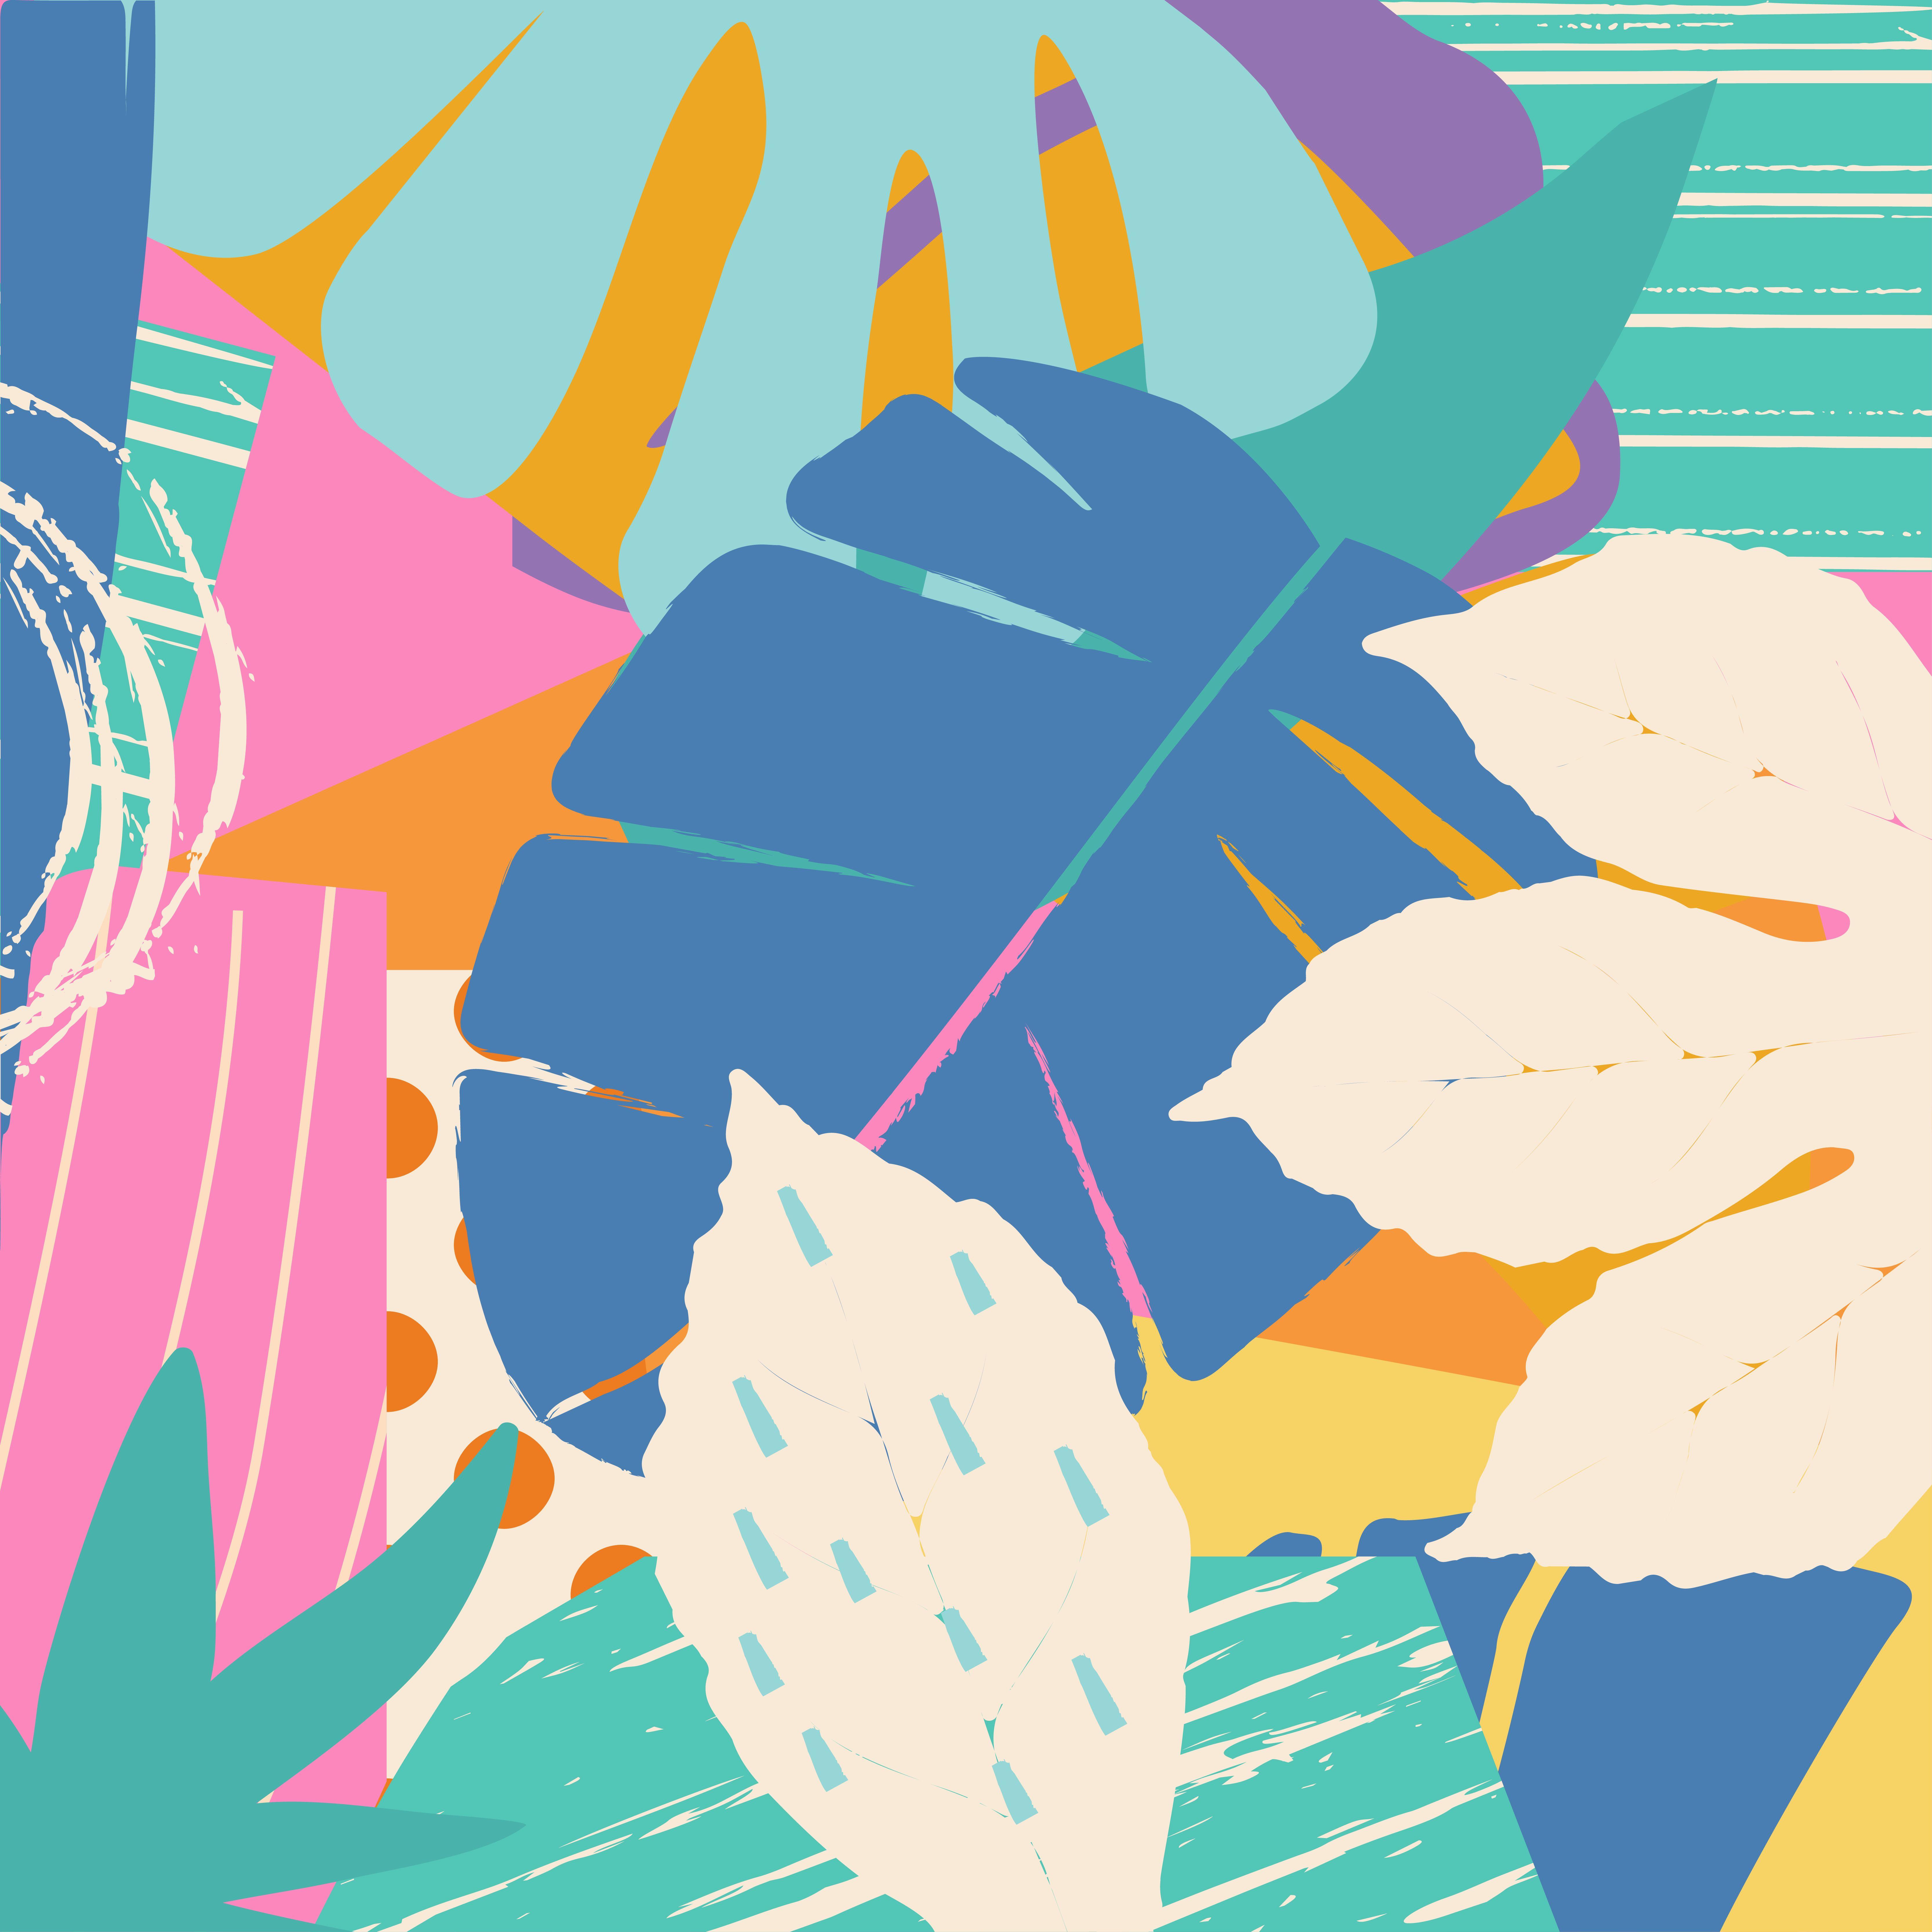 6667x6667 Nền rừng nhiệt đới và hoa.  Thiết kế poster nhiệt đới đầy màu sắc.  Nghệ thuật in lá, hoa, cây và cành kỳ lạ.  Mô hình thực vật, hình nền, thiết kế minh họa vector vải - Tải xuống Vectơ miễn phí, Đồ họa Clipart &